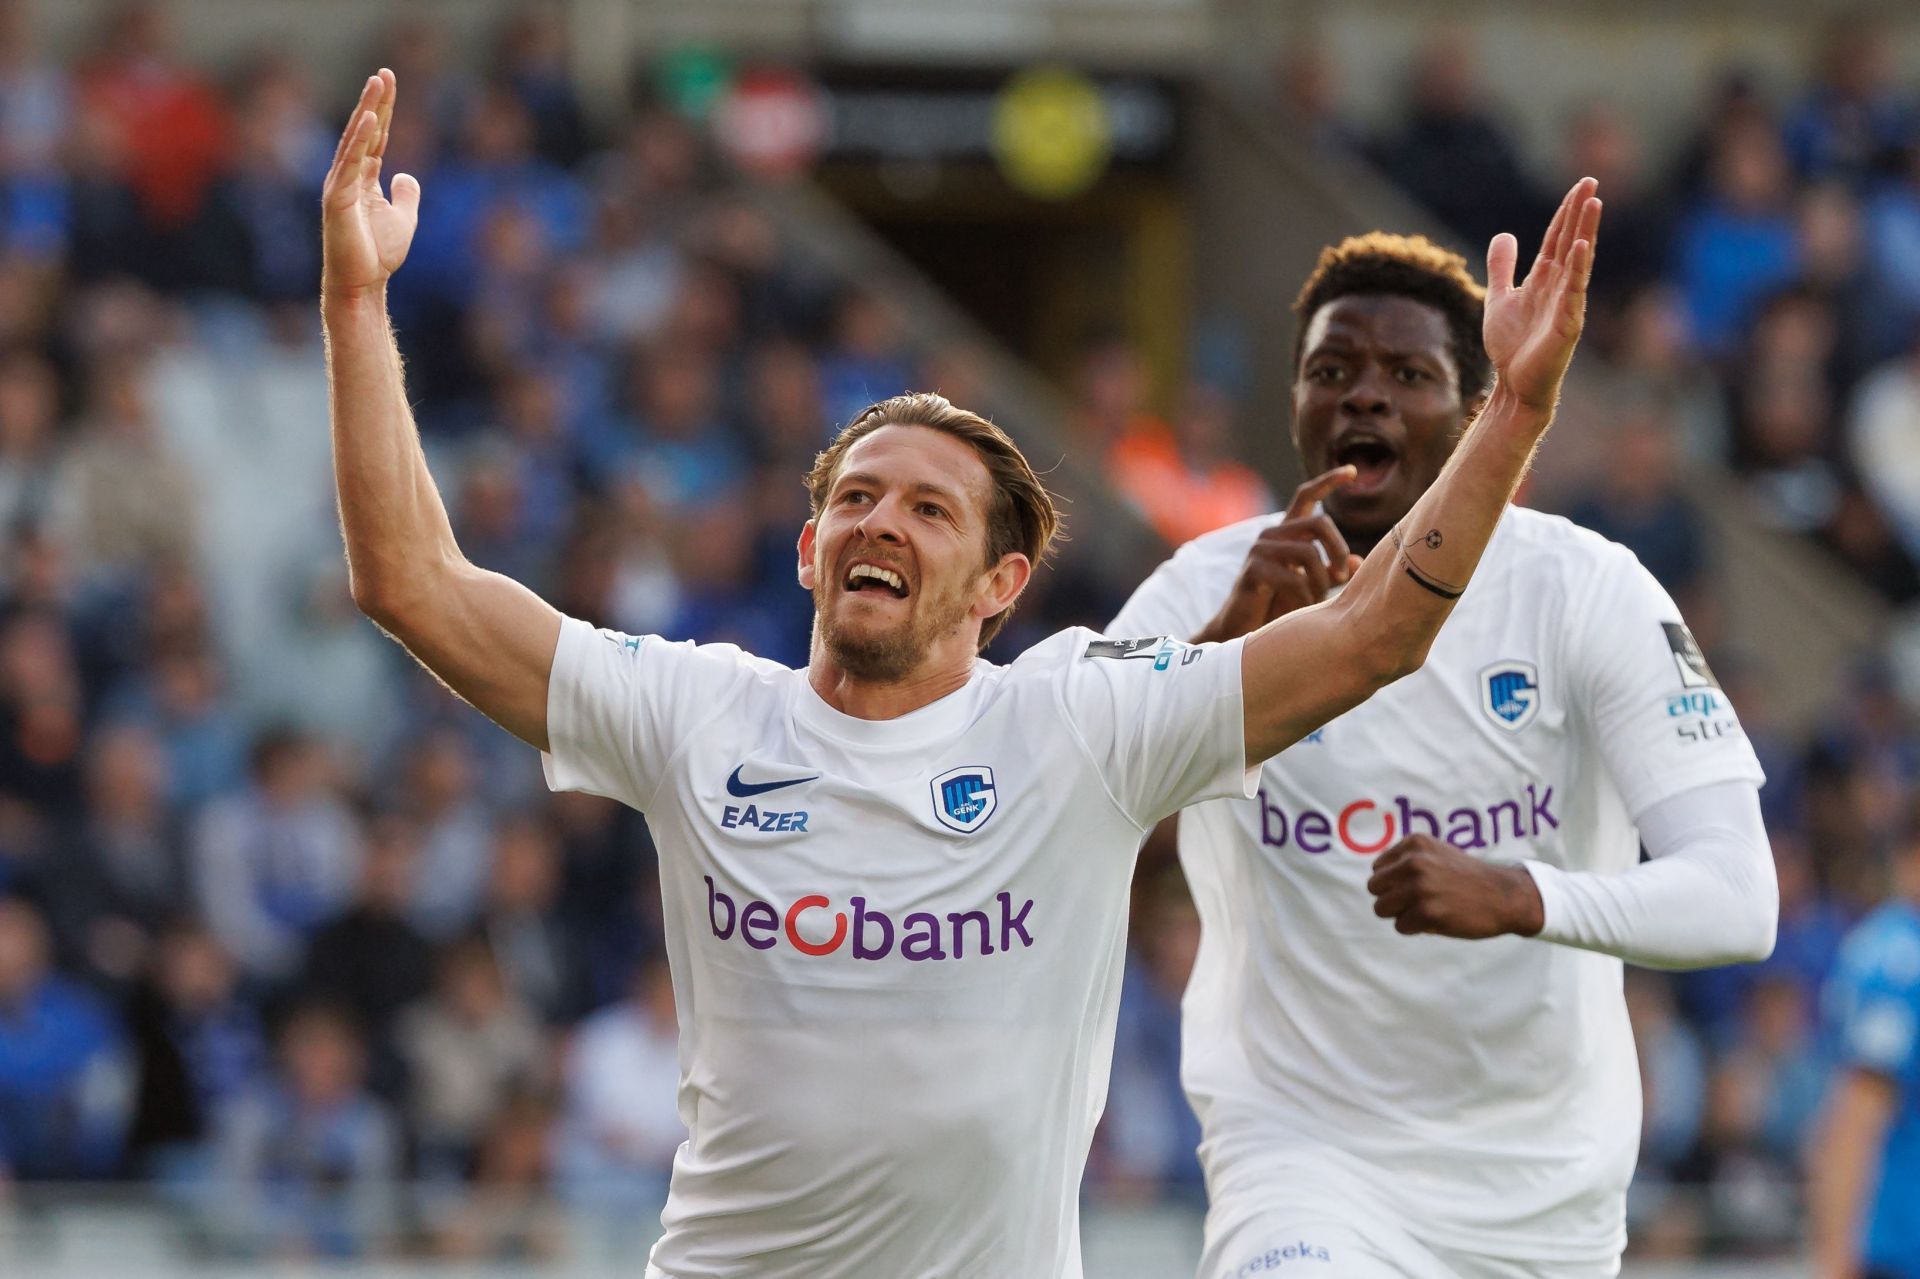 Genk will host Royal Antwerp - Pro League